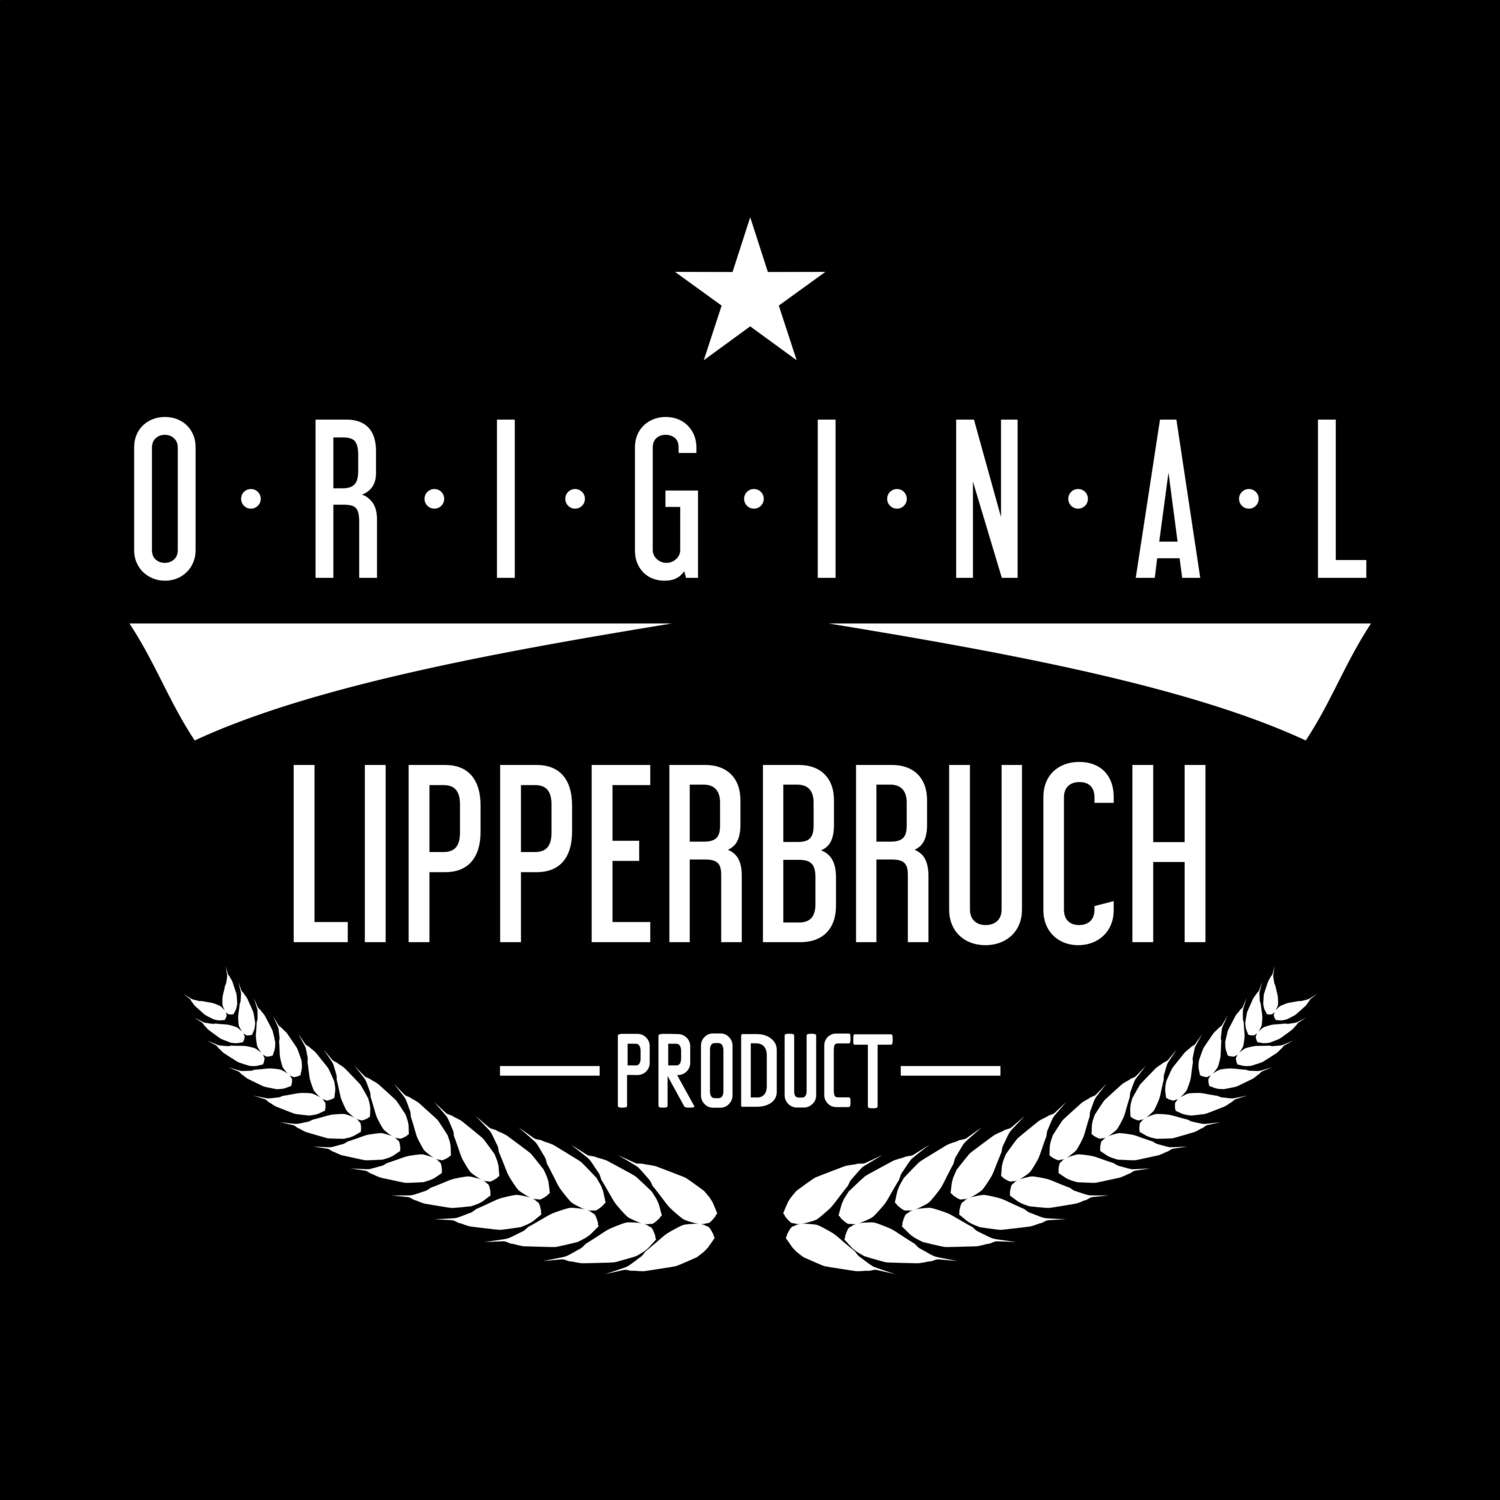 Lipperbruch T-Shirt »Original Product«